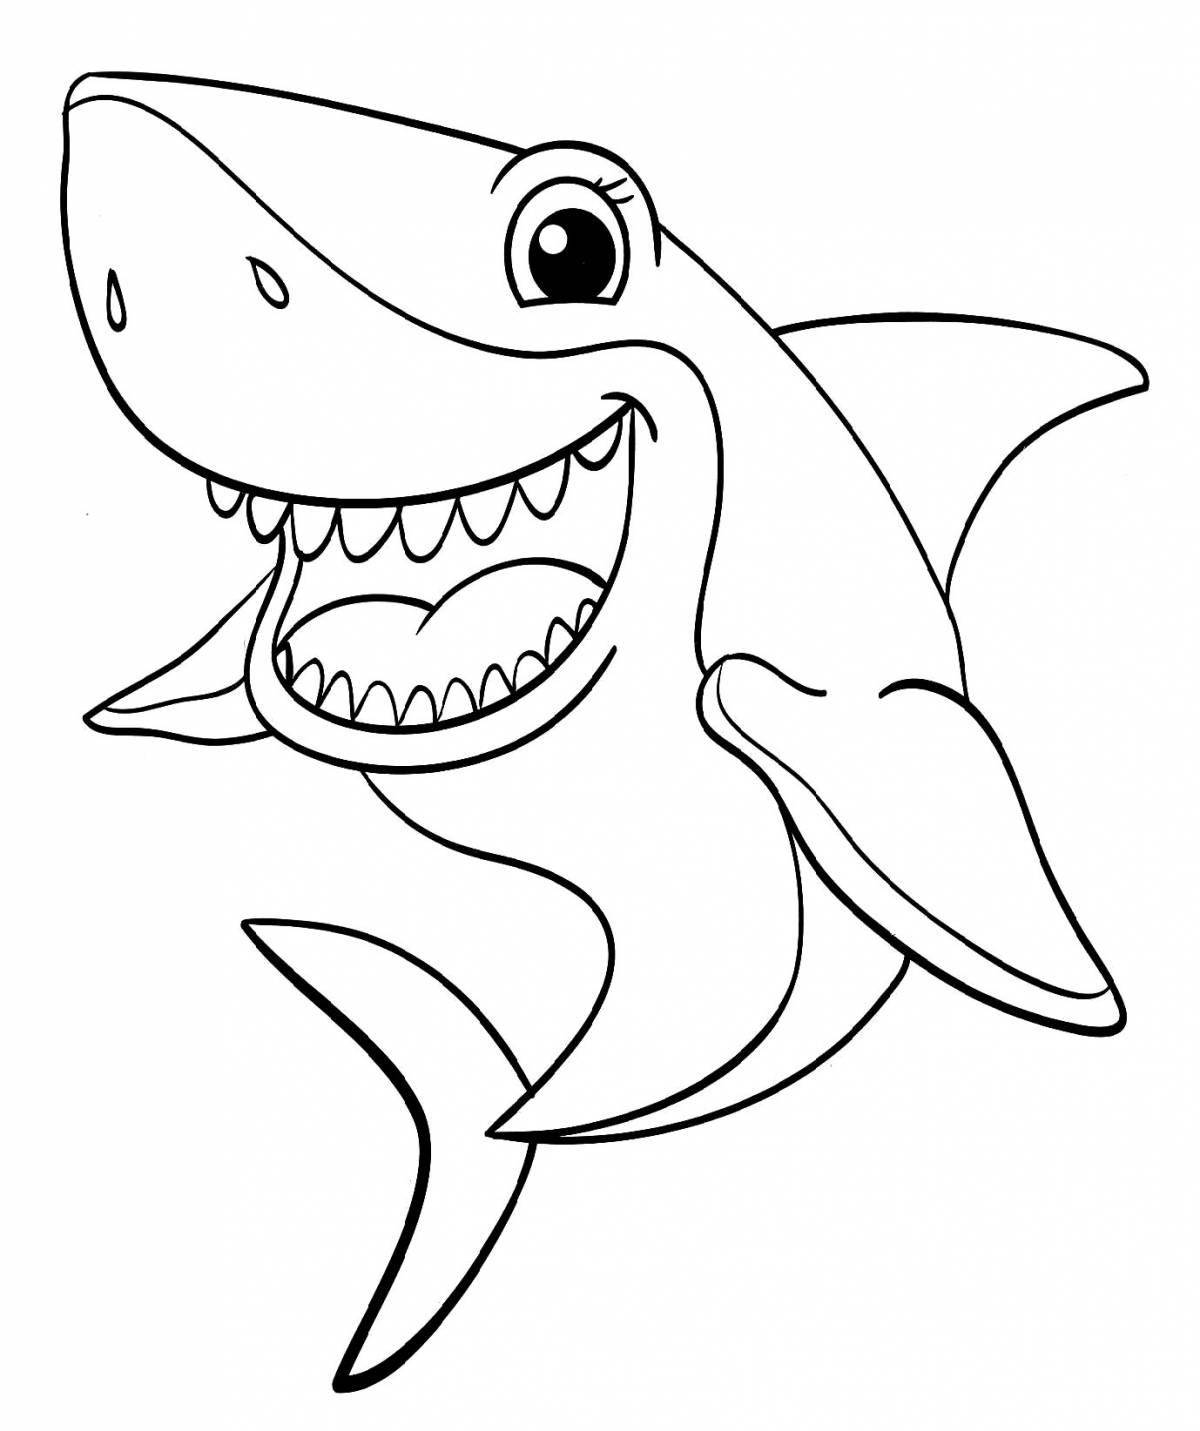 Shark fat coloring book